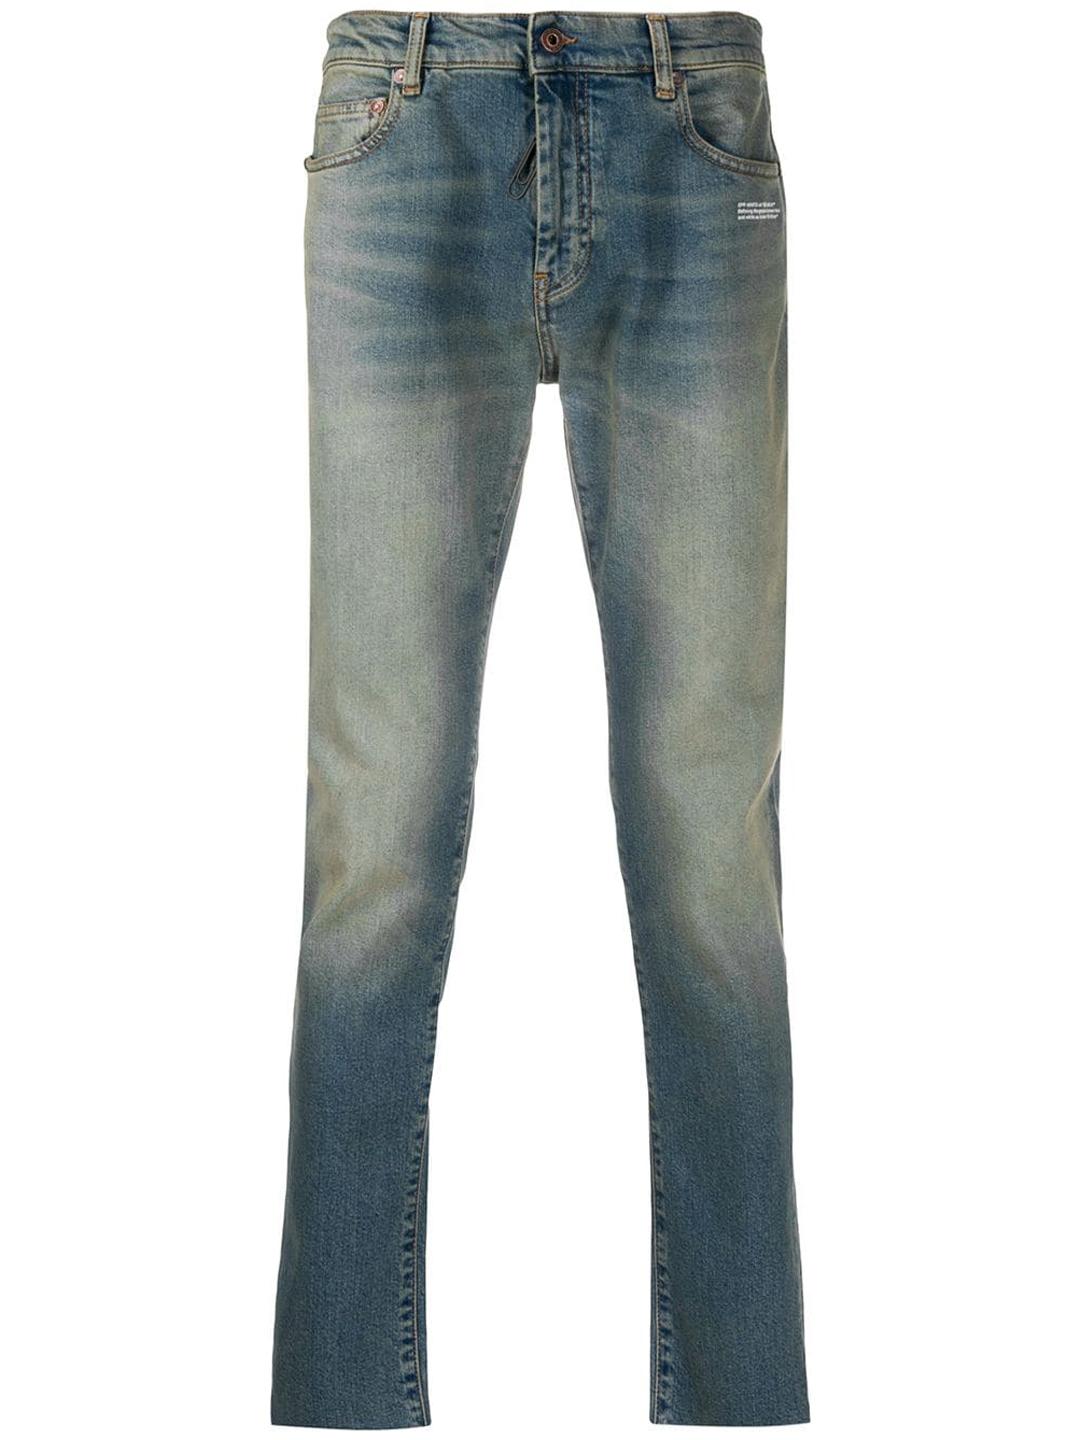 Off-White c/o Virgil Abloh Denim Skinny Jeans in Light Blue (Blue) for ...